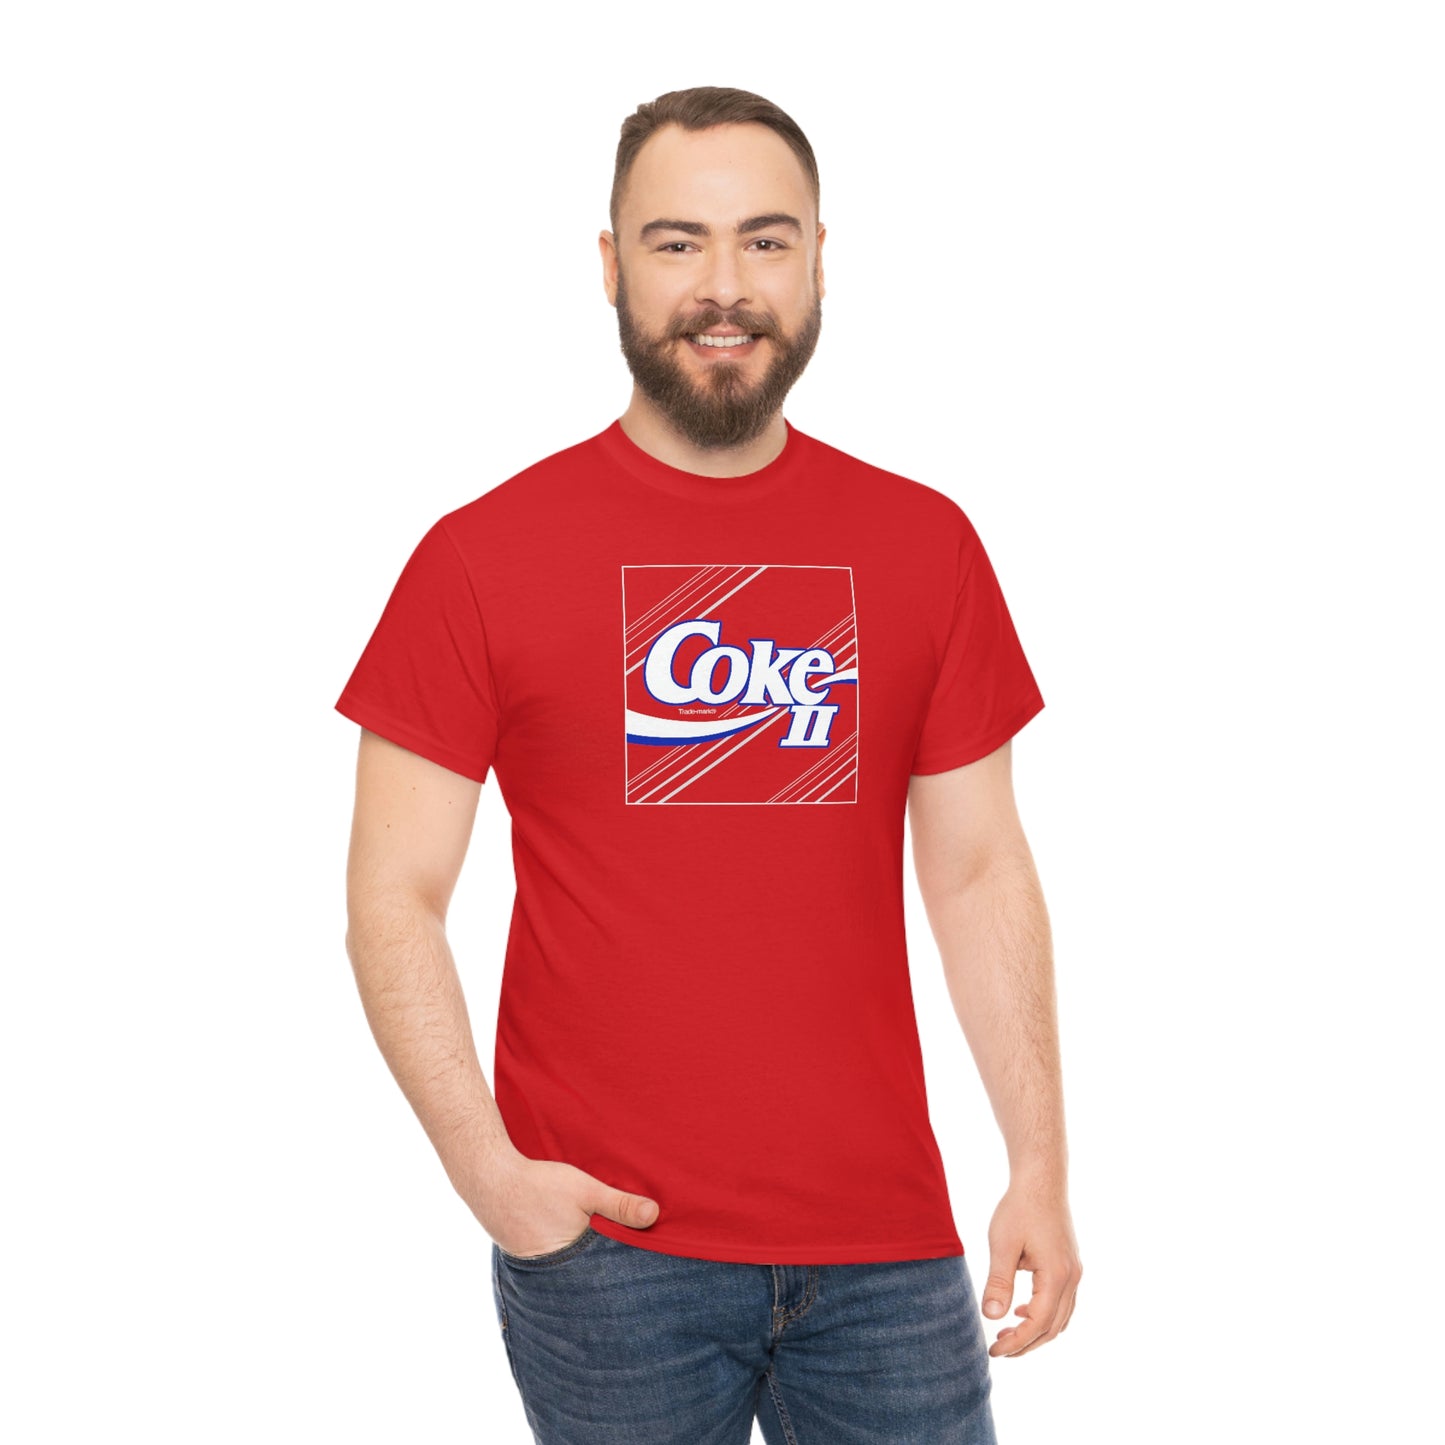 Coke II T-shirt